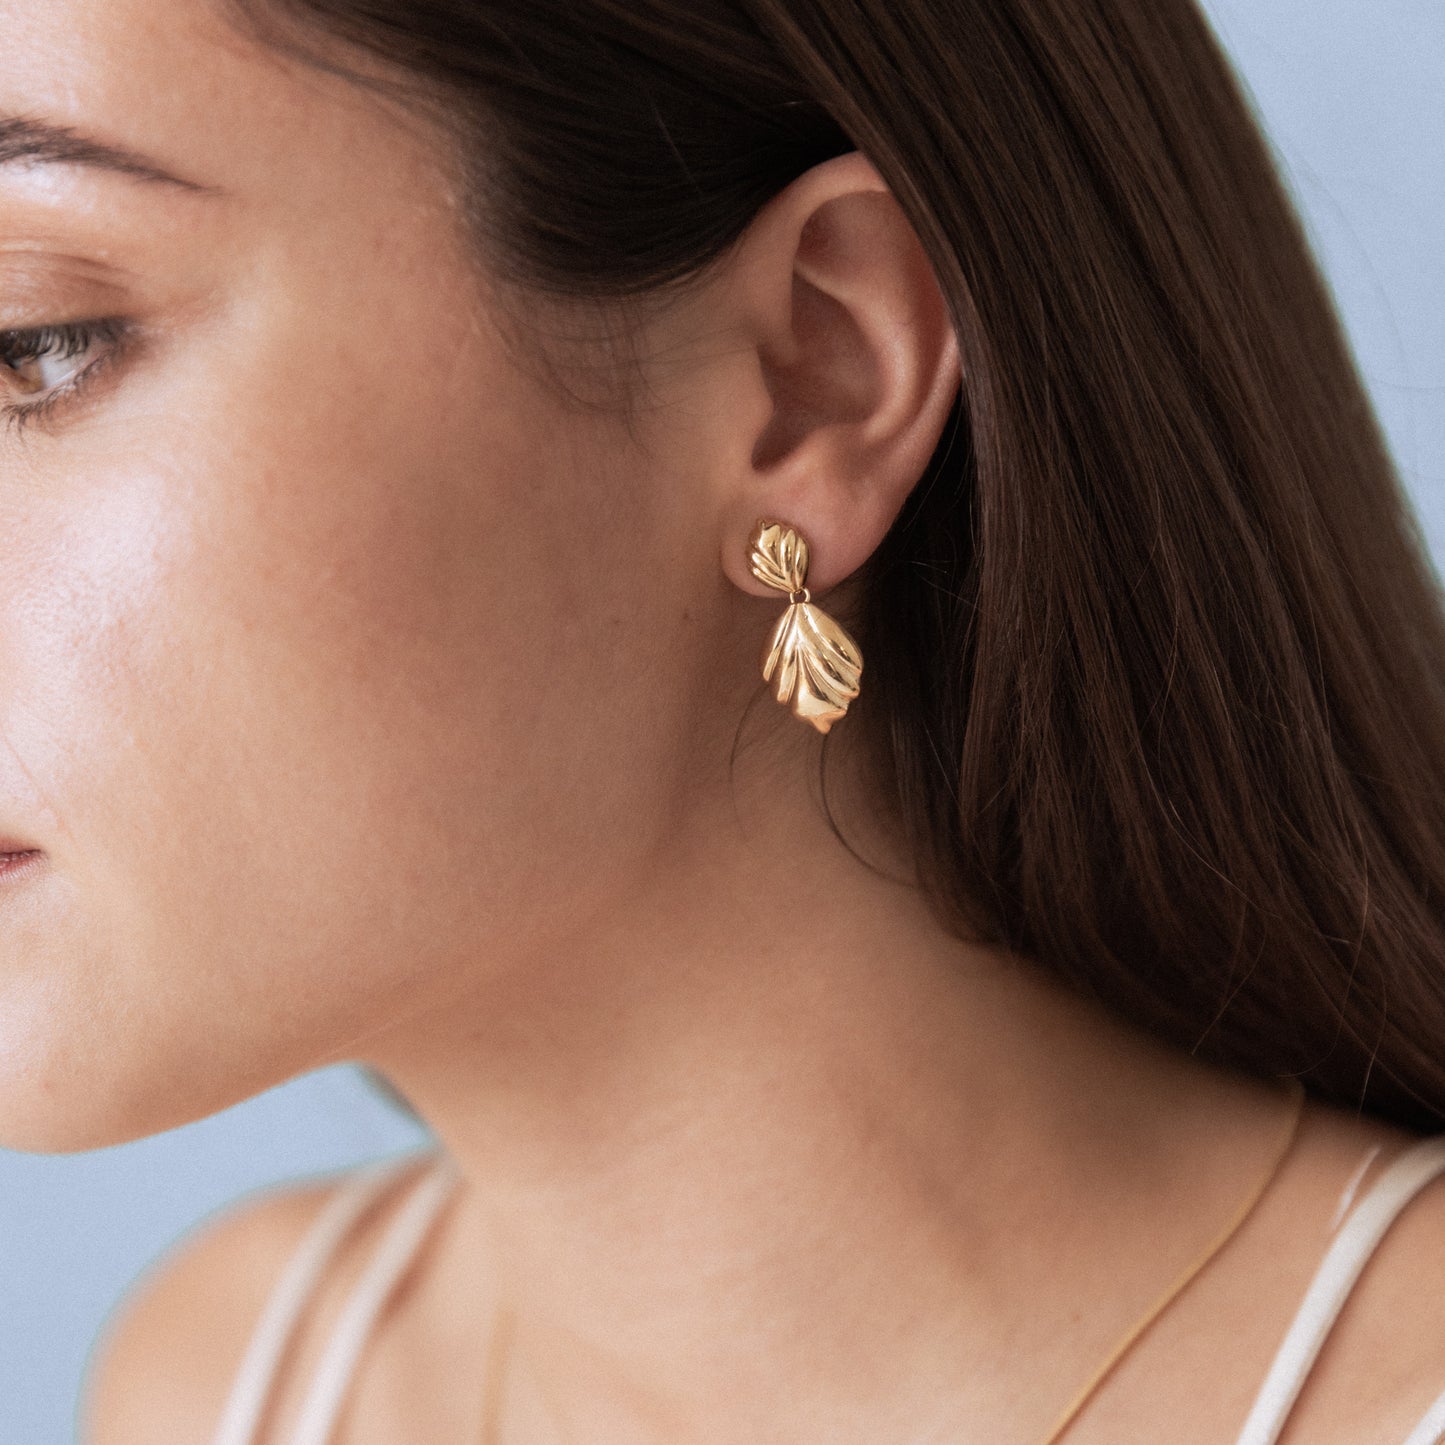 Manon earrings